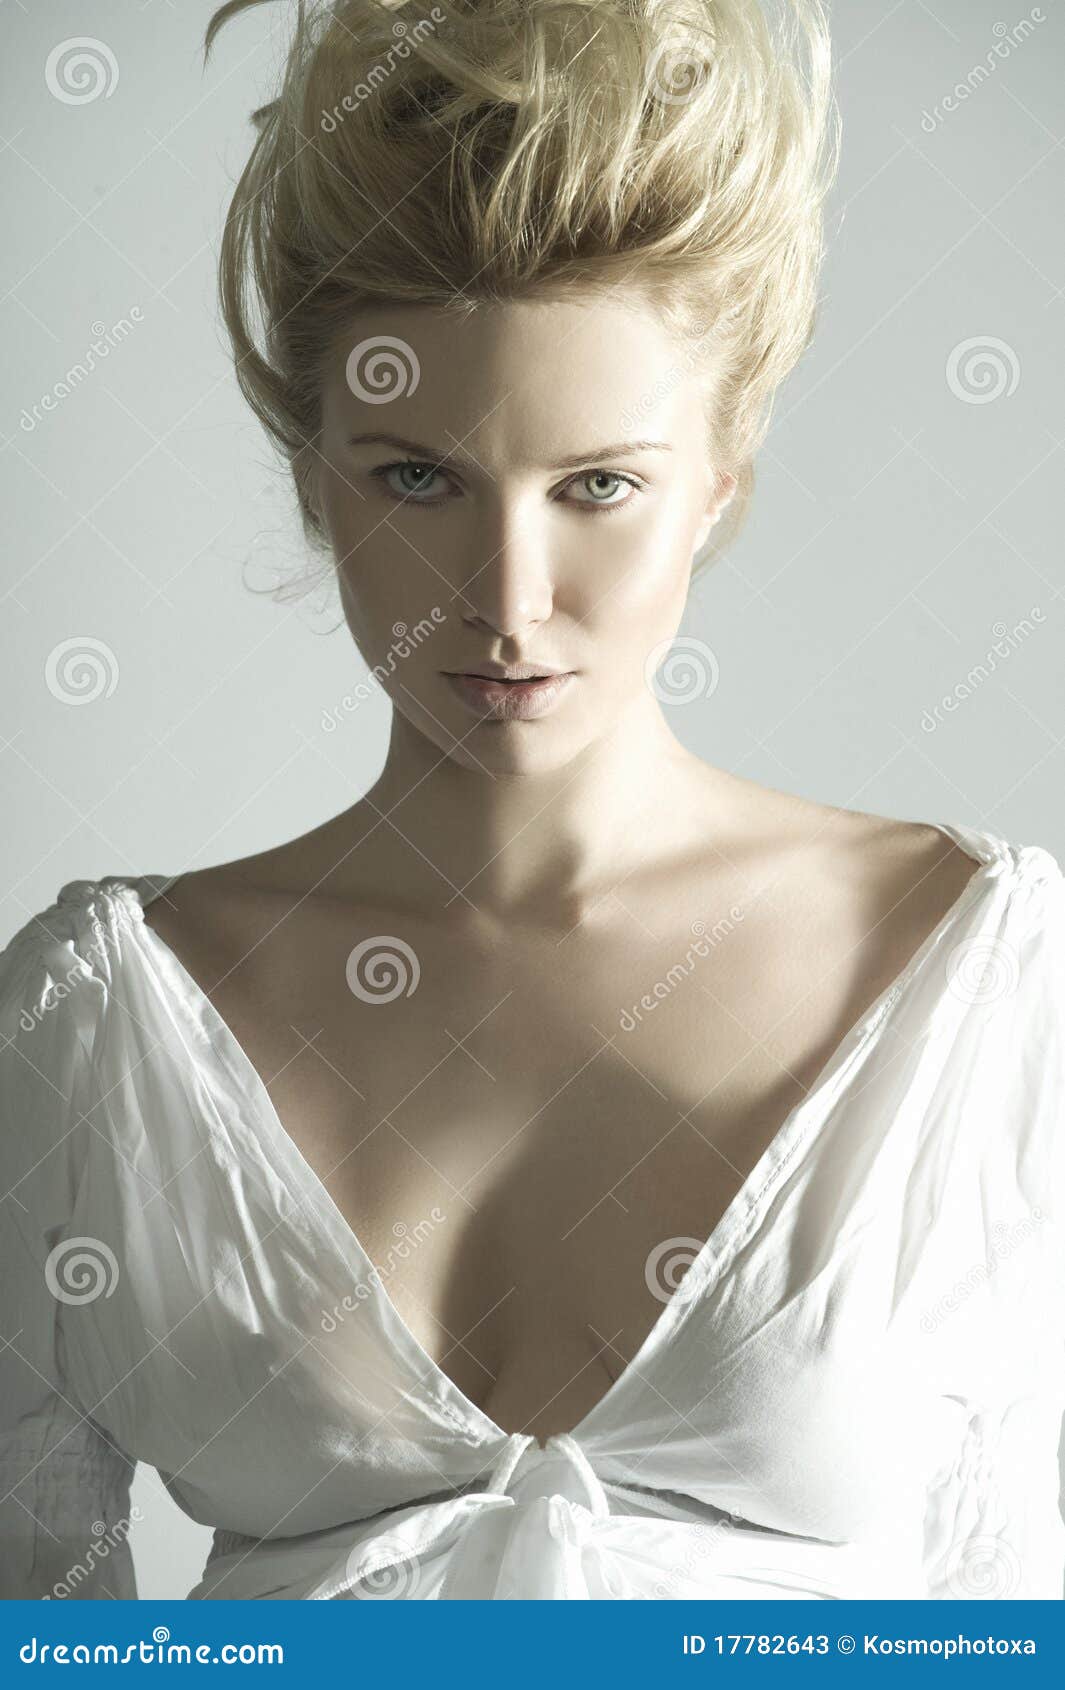 Beautiful Fashion Women Portrait Stock Image Image 17782643